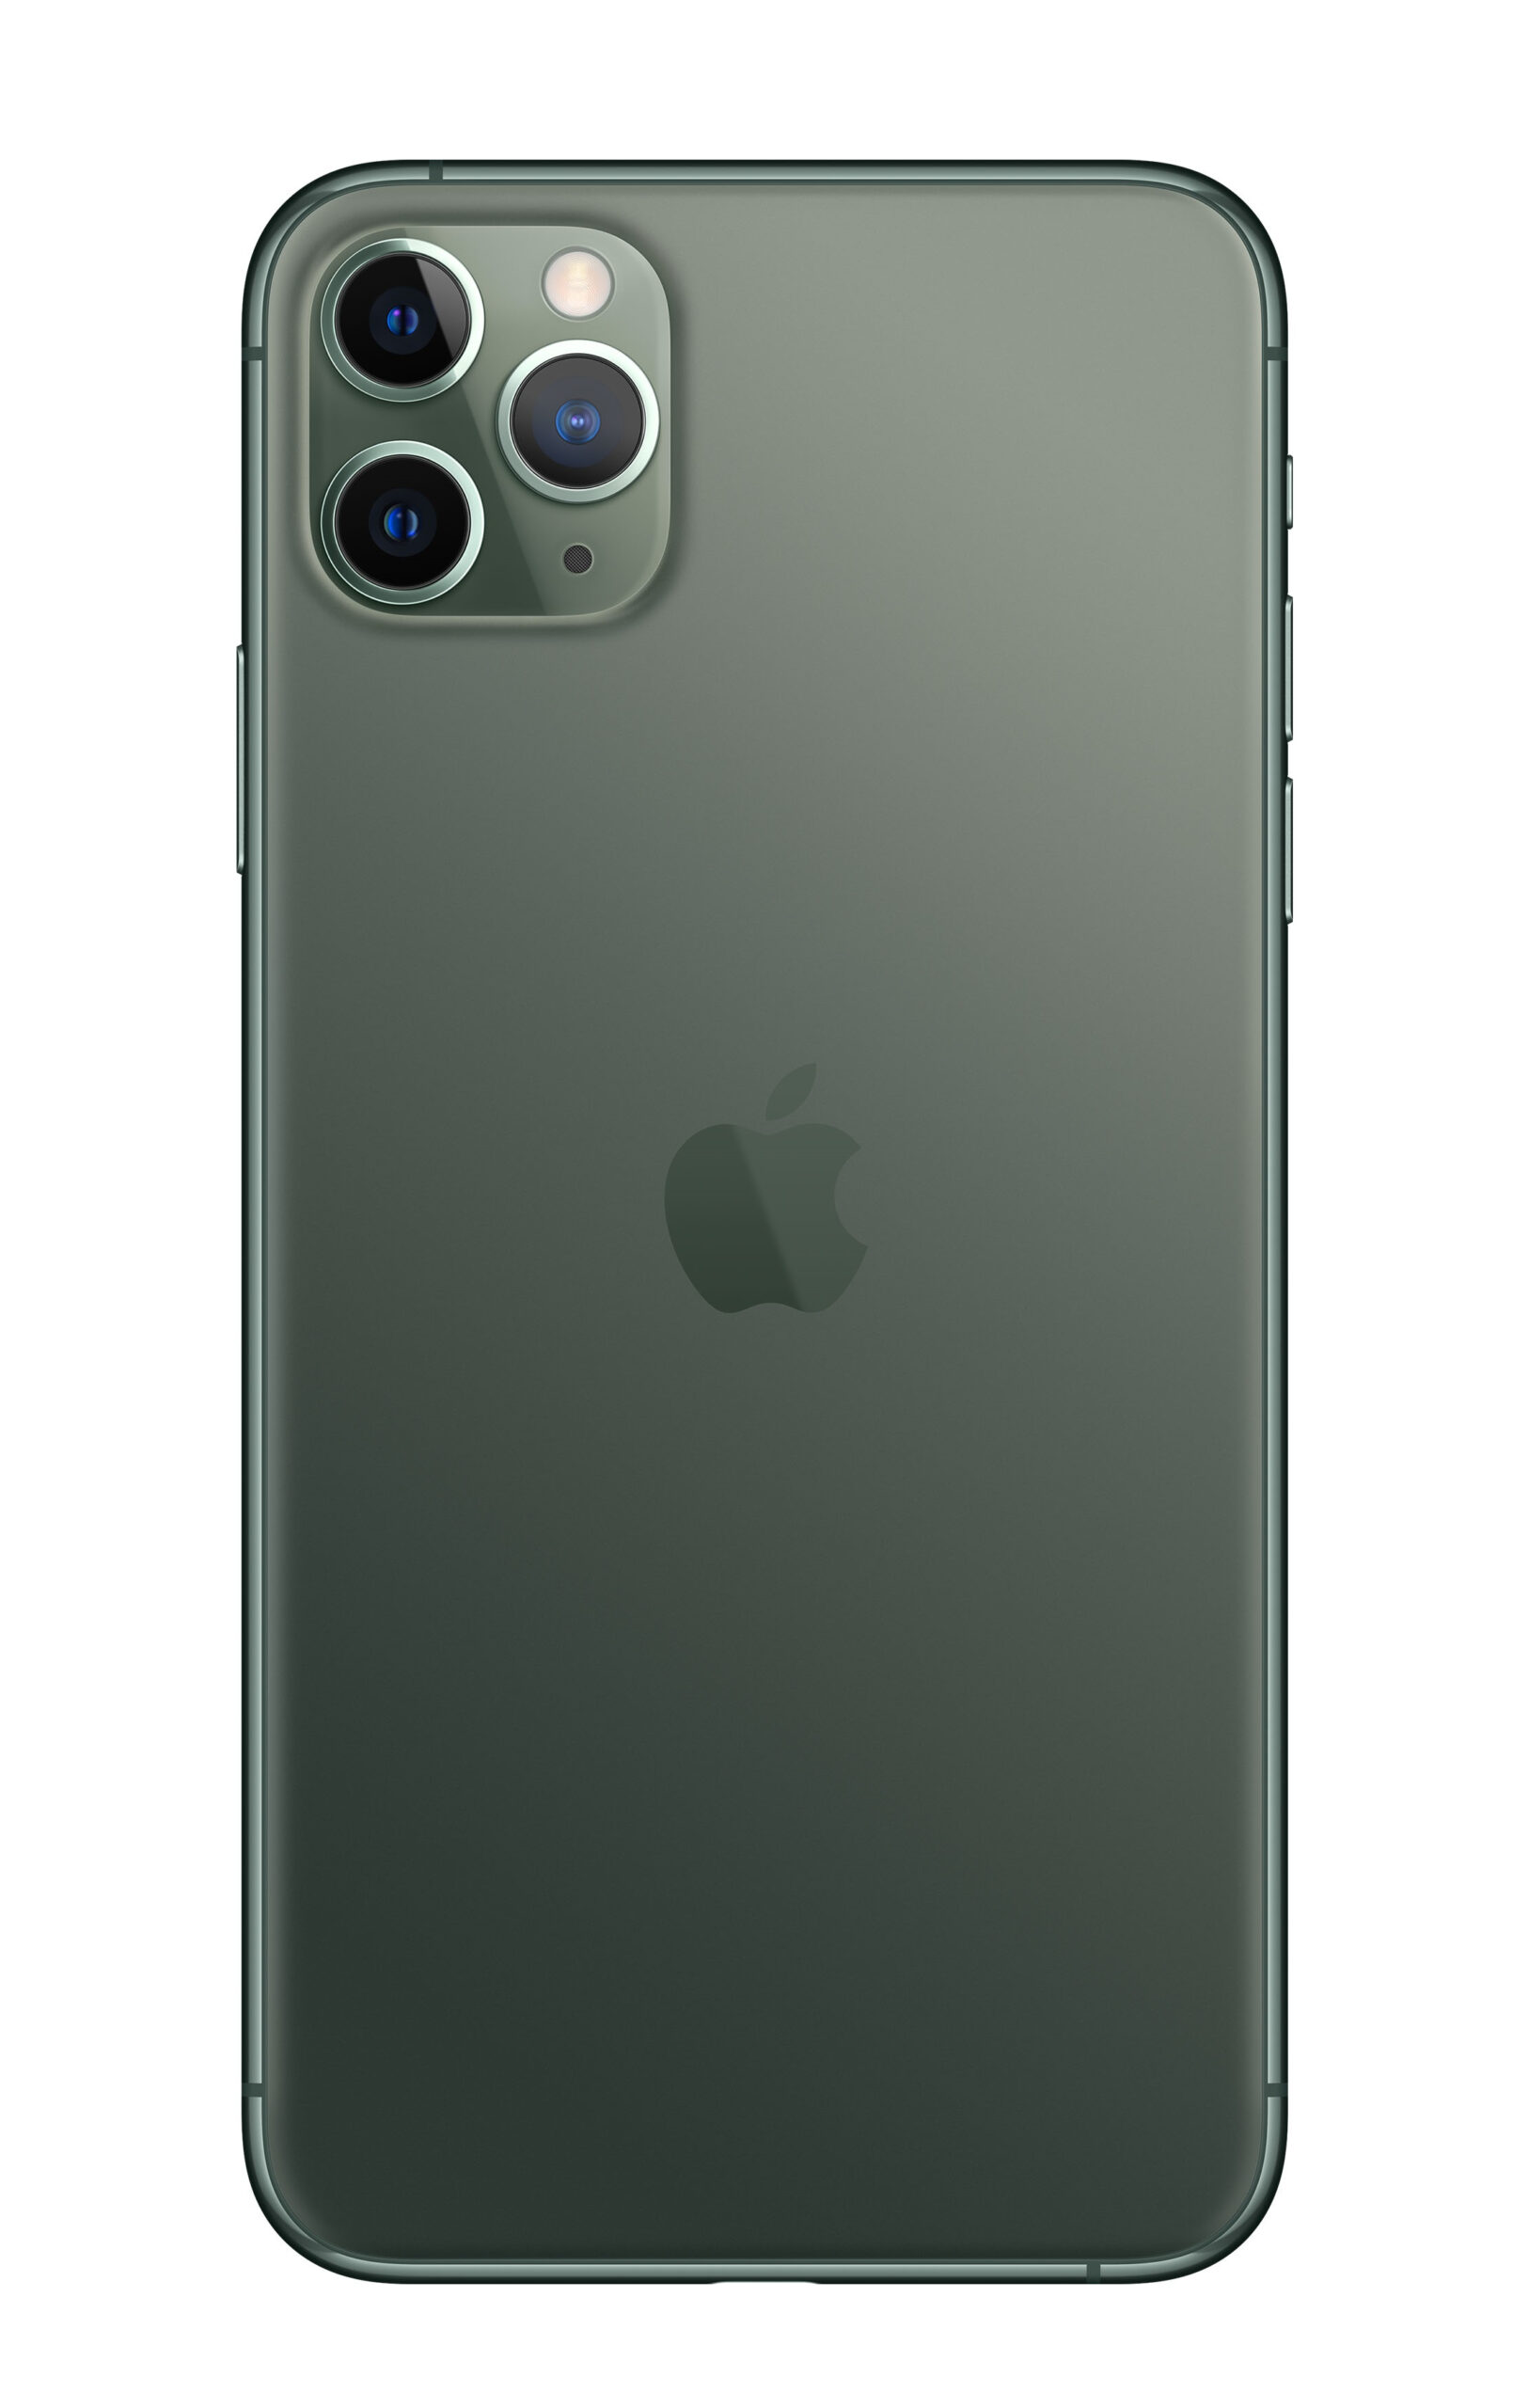 11PM512MG-A+ - $951 - Apple iPhone 11 PRO MAX 512GB MIDNIGHT GREEN